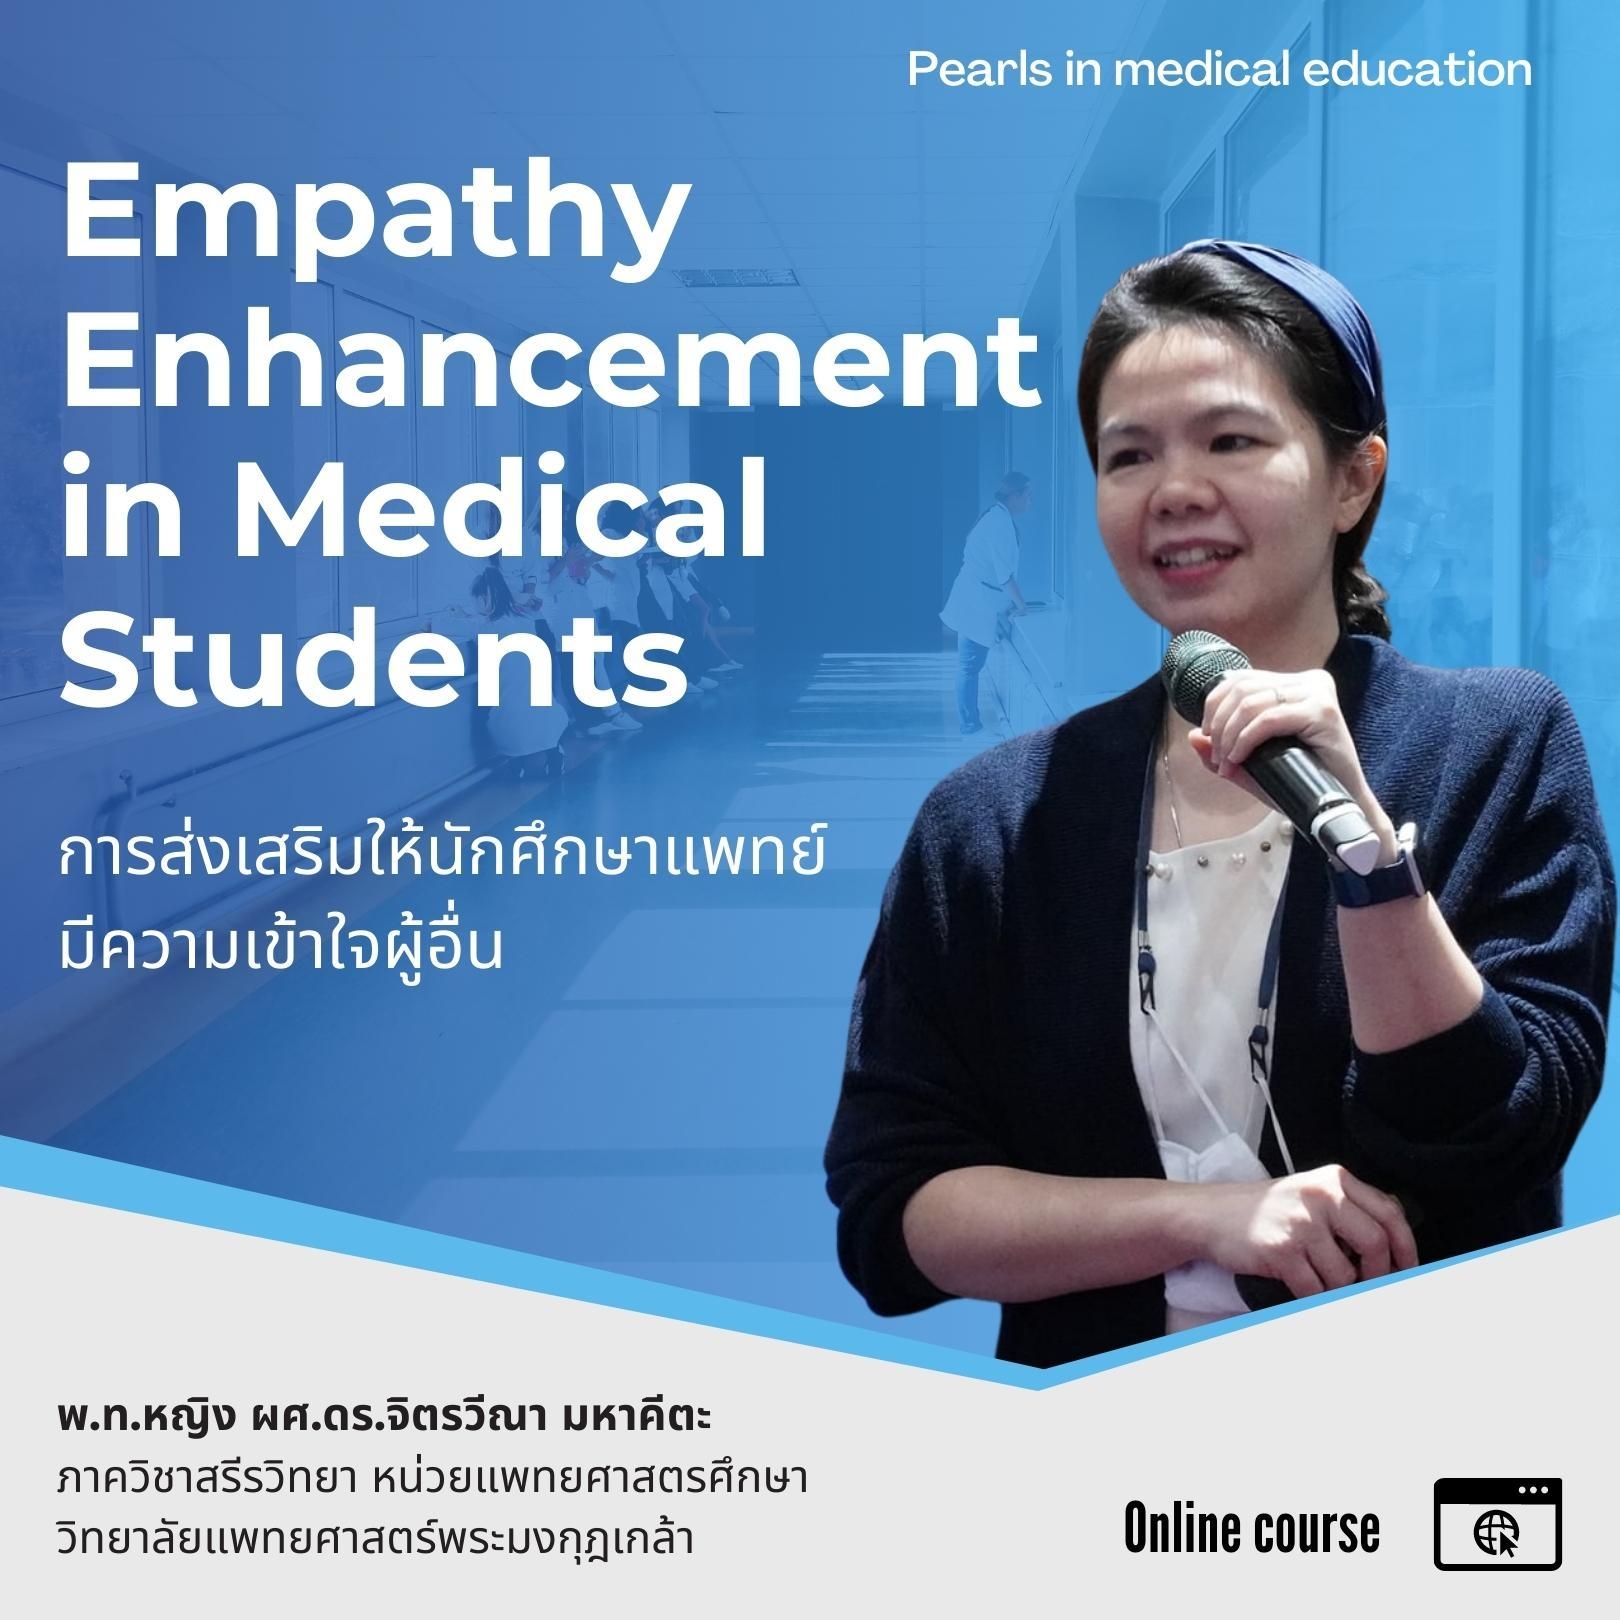 Empathy Enhancement in Medical Students การส่งเสริมให้นักศึกษาแพทย์มีความเข้าใจผู้อื่น